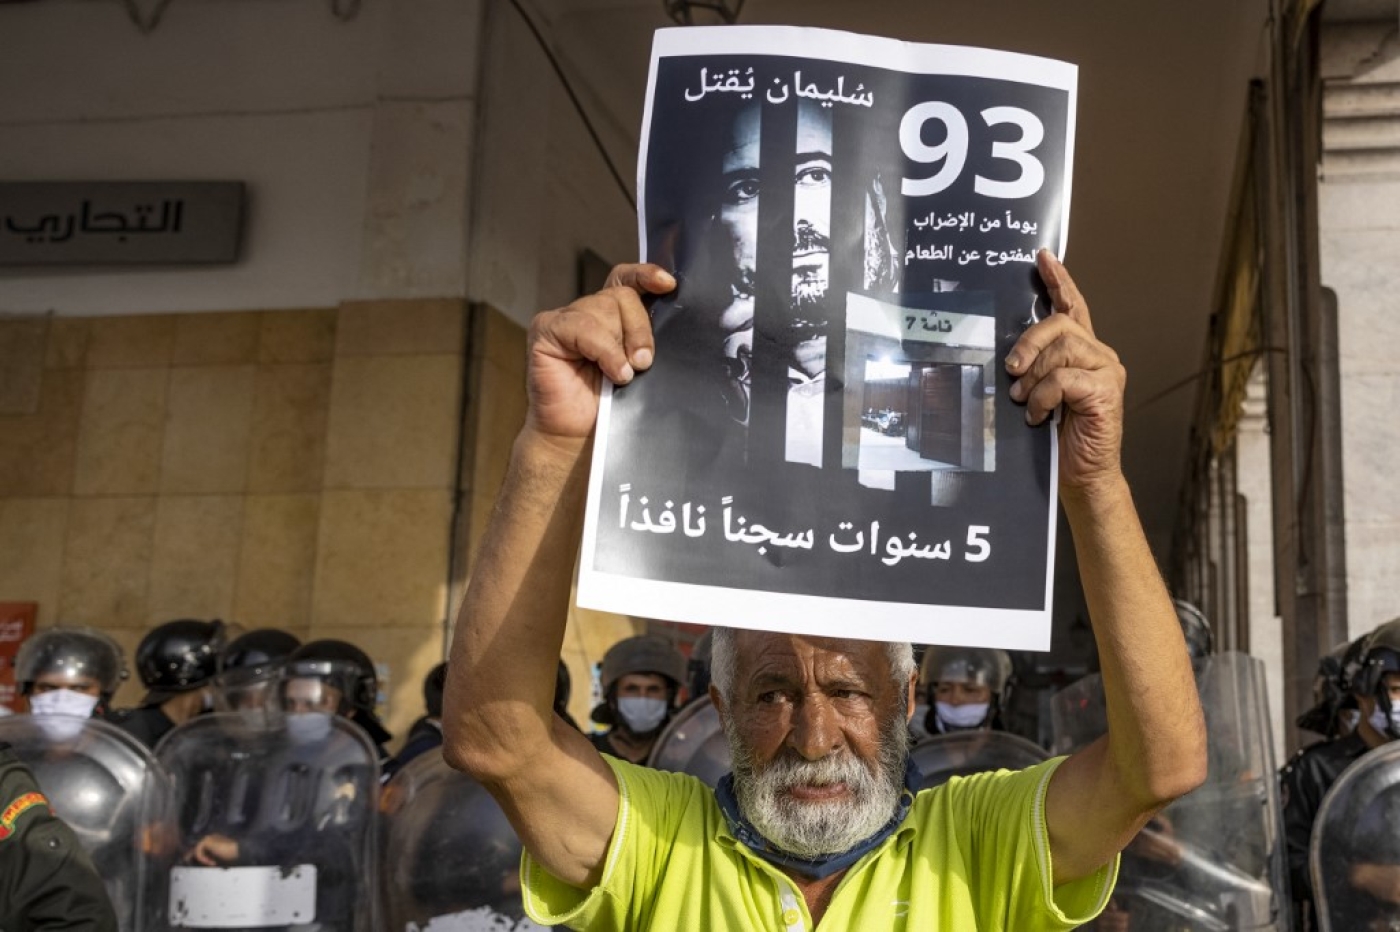 Un militant marocain tient une affiche avec la photo du journaliste marocain Souleimane Raissouni, condamné à cinq ans de prison pour « agression sexuelle », le 10 juillet 2021 à Rabat (AFP/Fadel Senna)